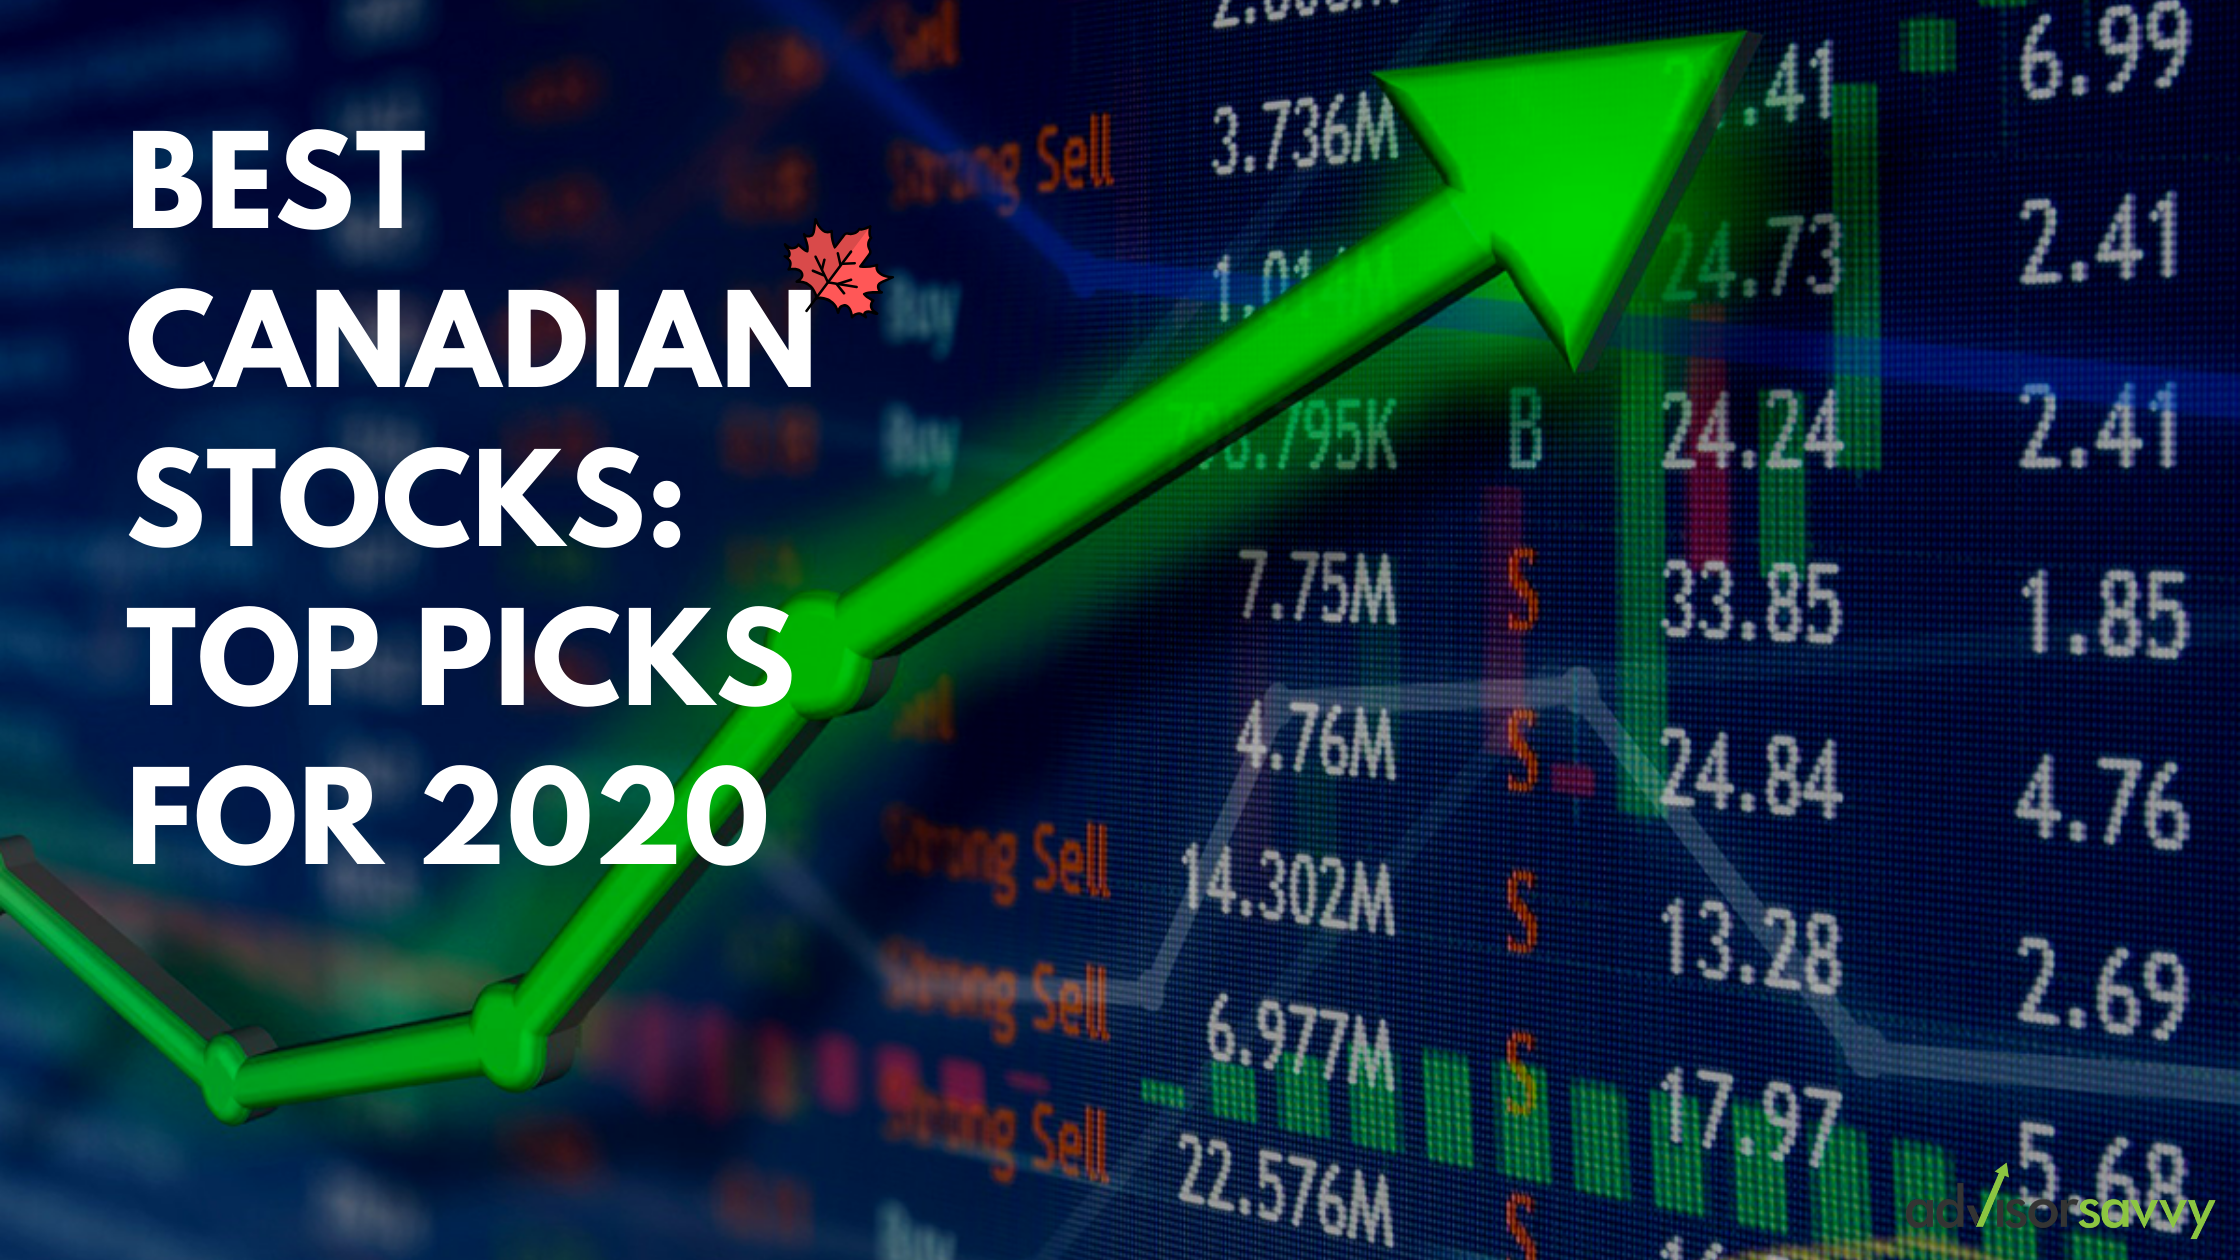 Best Canadian Stocks Advisorsavvy's Top Picks For 2020